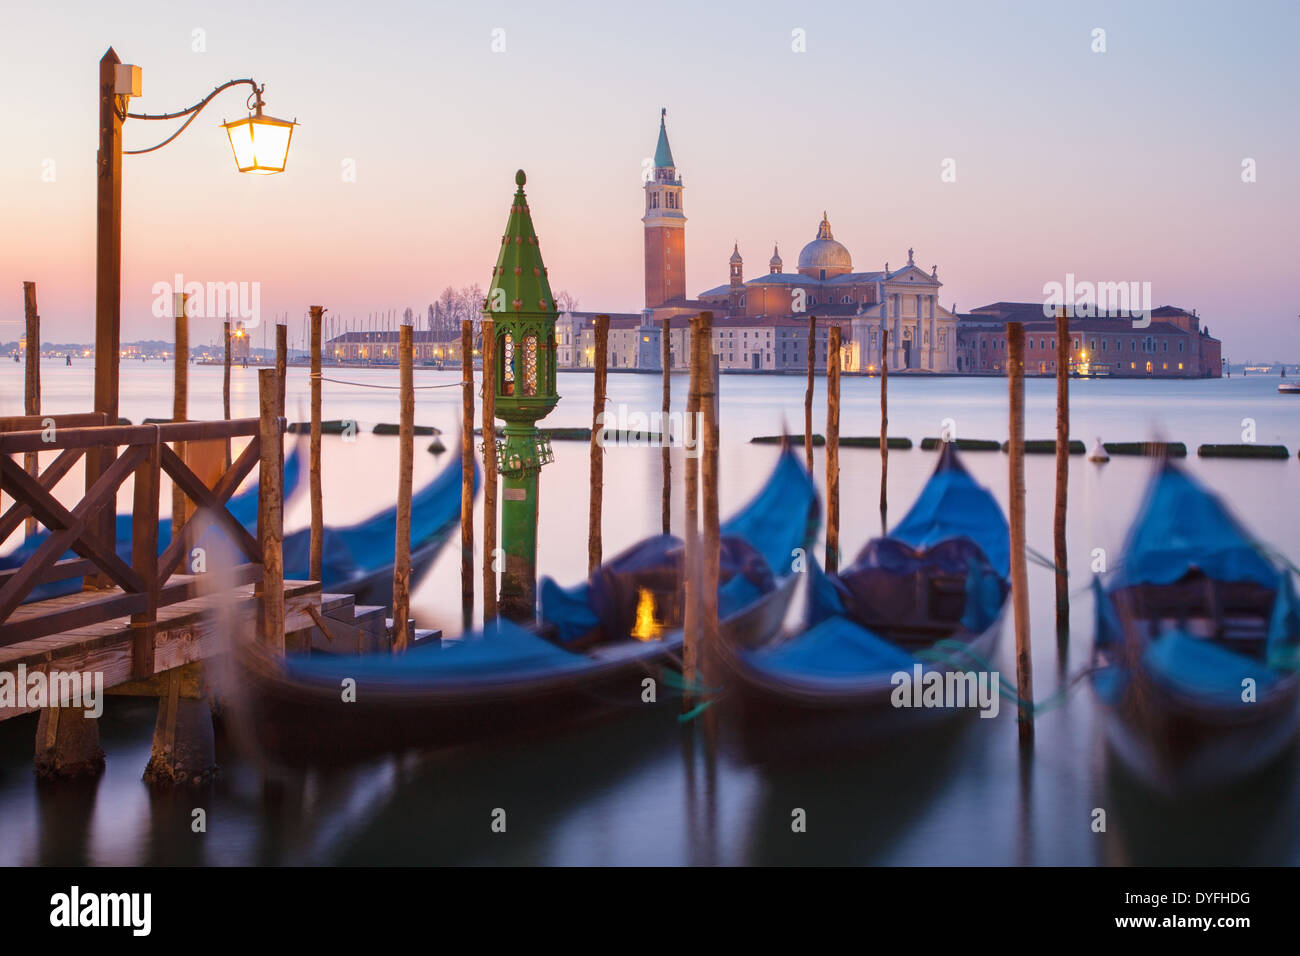 Venice - Gondolas and San Giorgio Maggiore church in background in morning dusk. Stock Photo